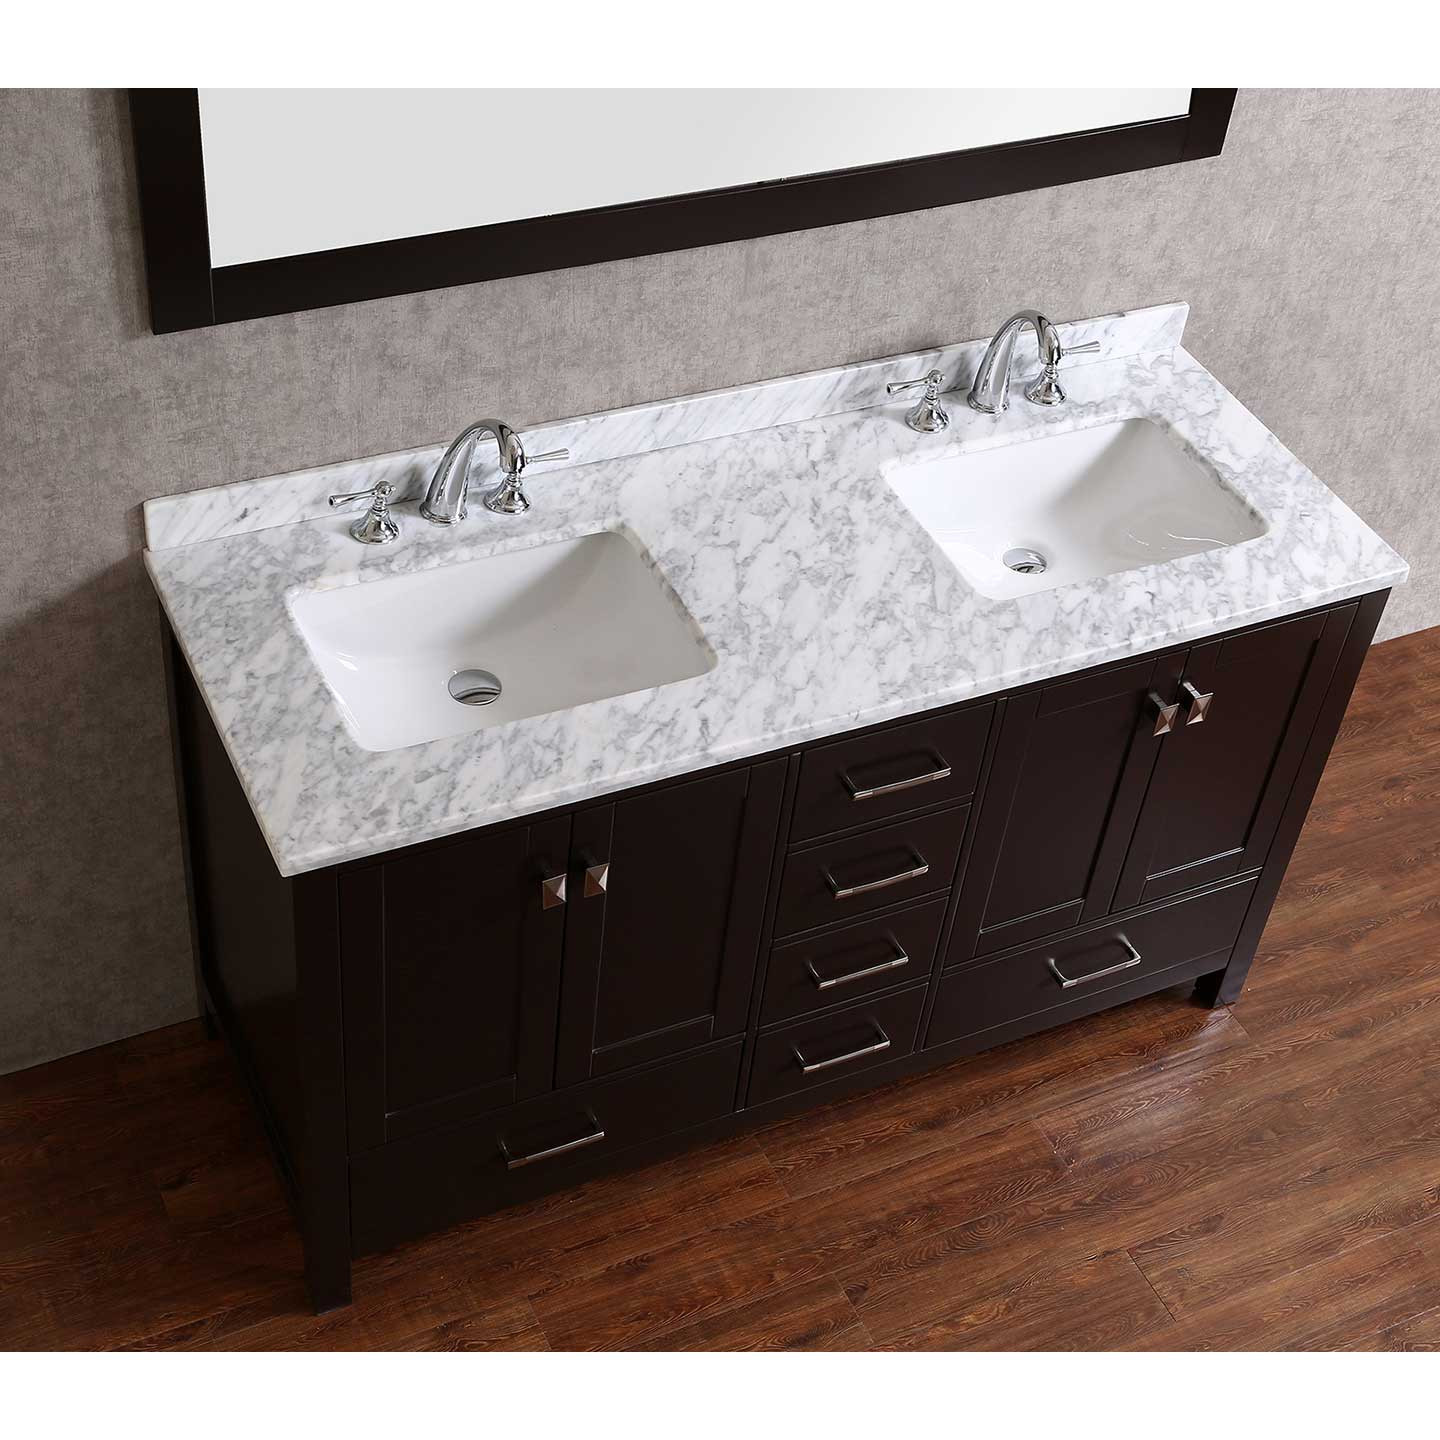 Real Wood Bathroom Vanities
 Buy Vnicent 60" Solid Wood Double Bathroom Vanity in